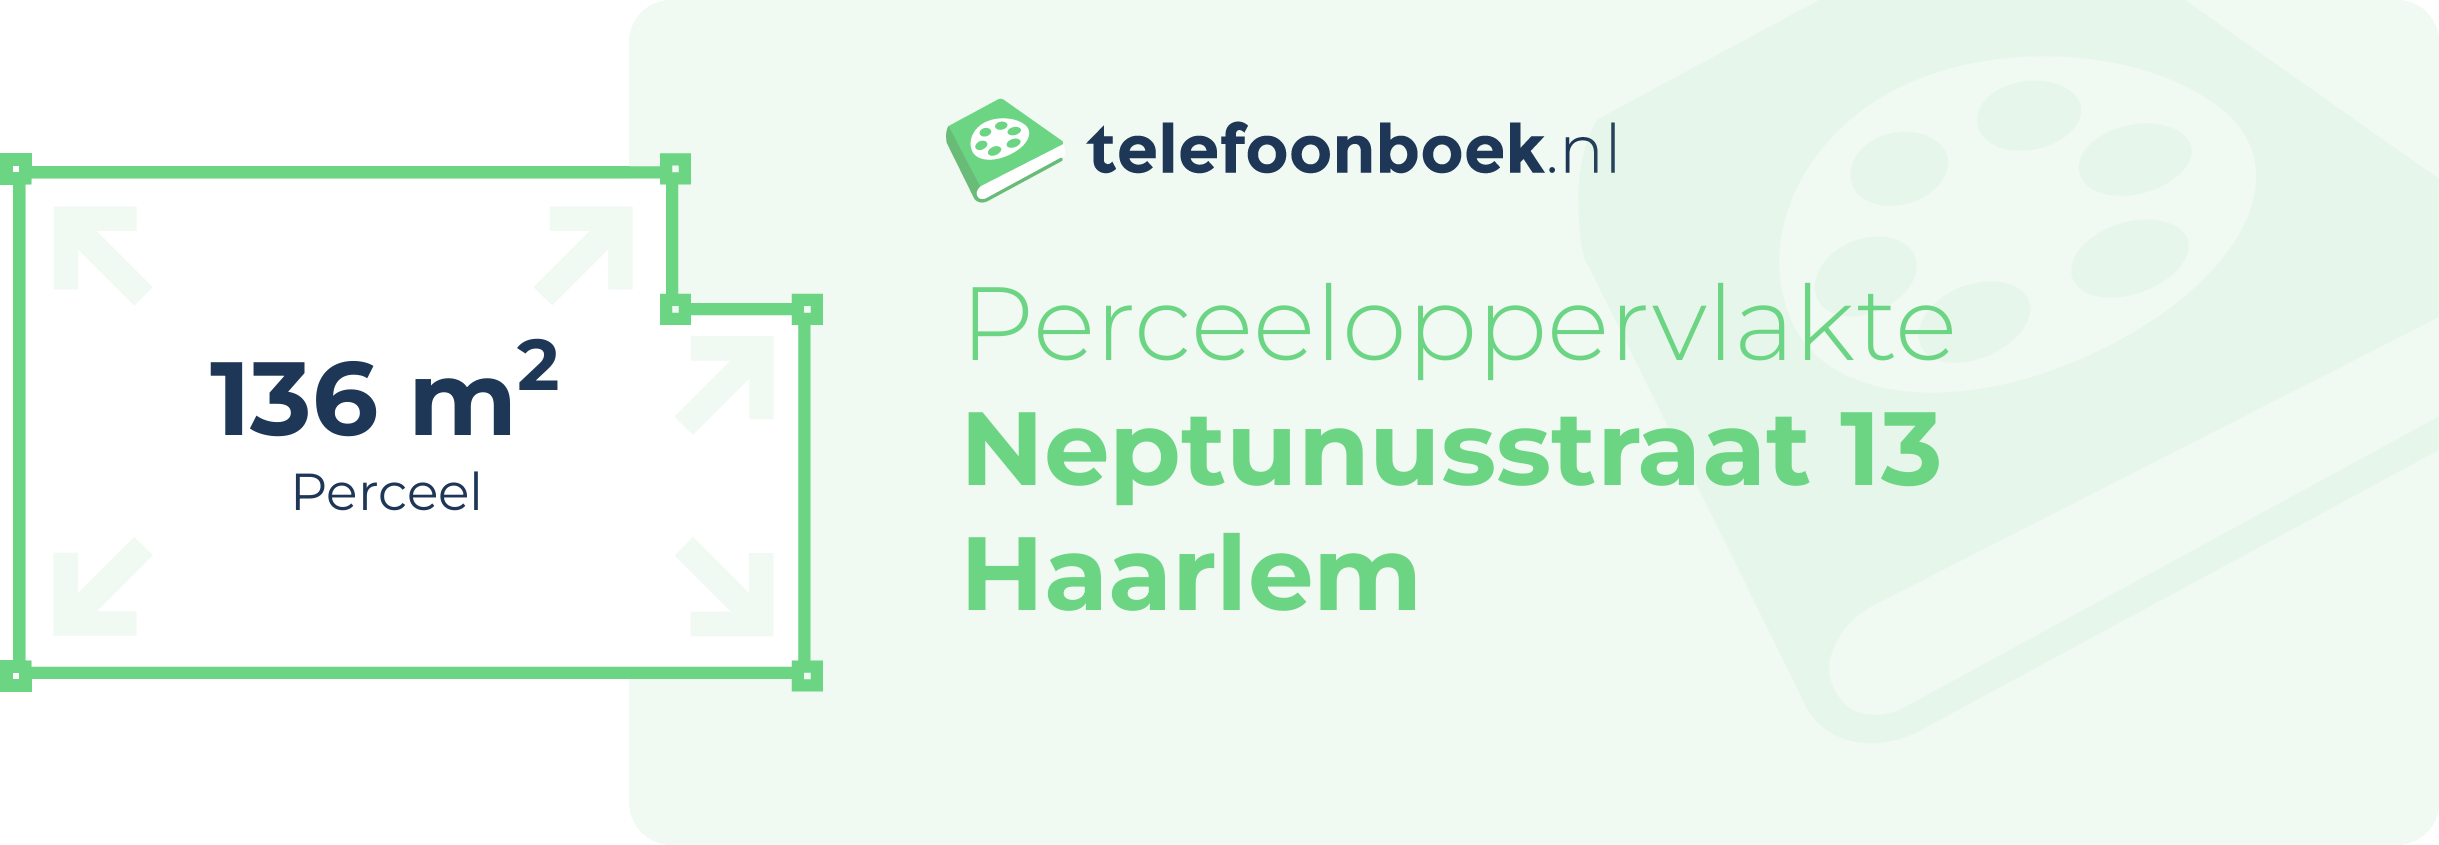 Perceeloppervlakte Neptunusstraat 13 Haarlem